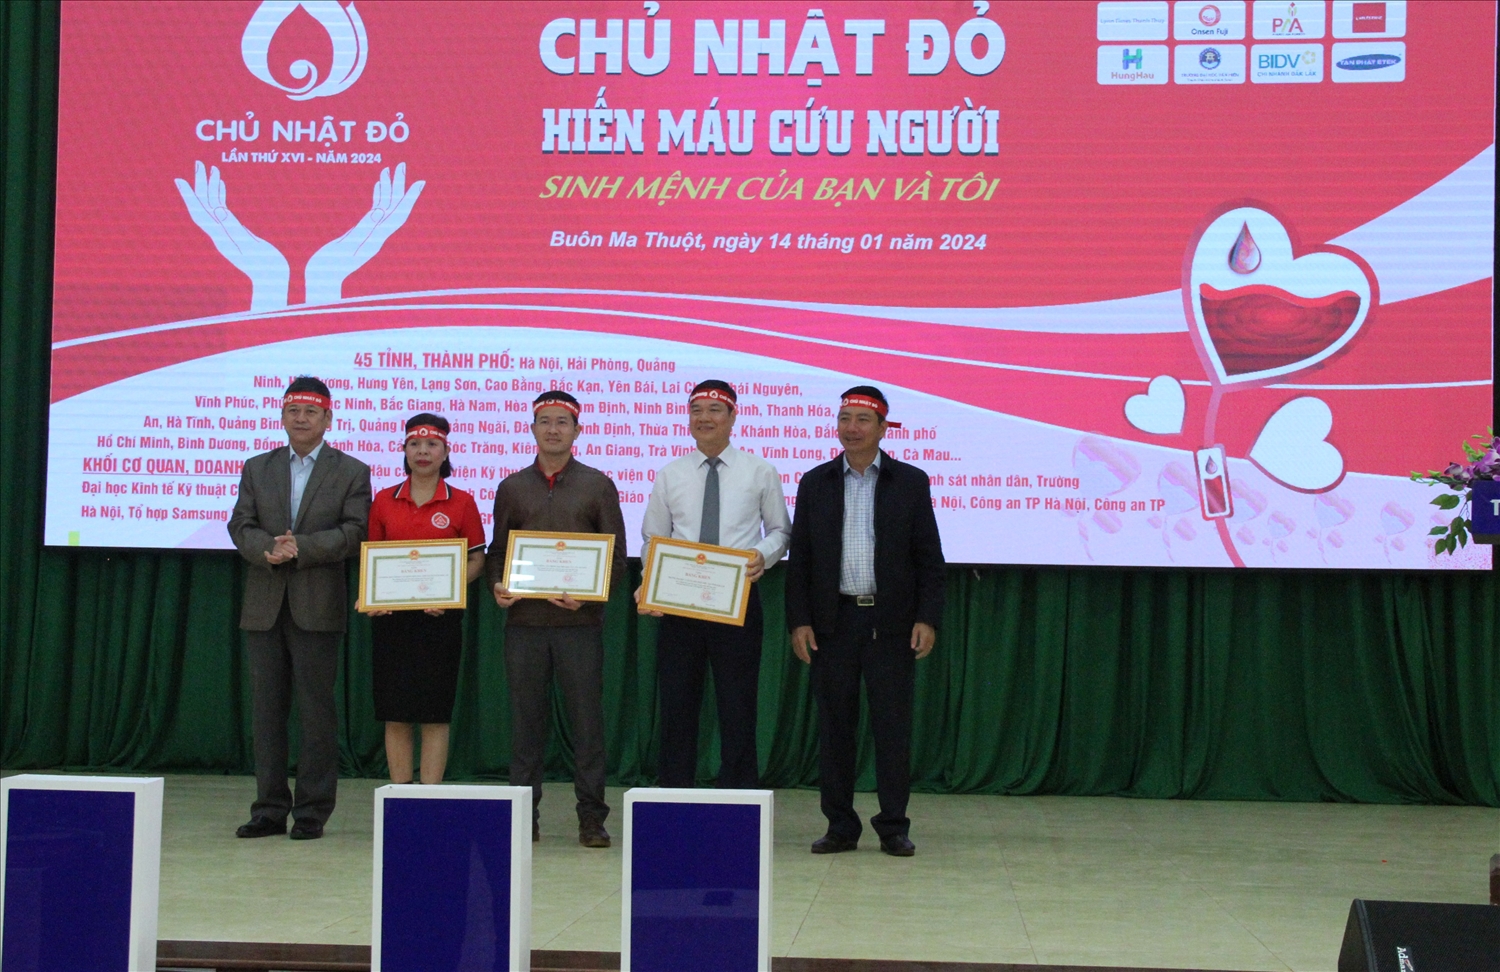 Tặng Bằng khen của Chủ tịch UBND tỉnh Đắk Lắk cho tập thể có thành tích xuất sắc trong 10 năm triển khai chương trình Chủ nhật đỏ